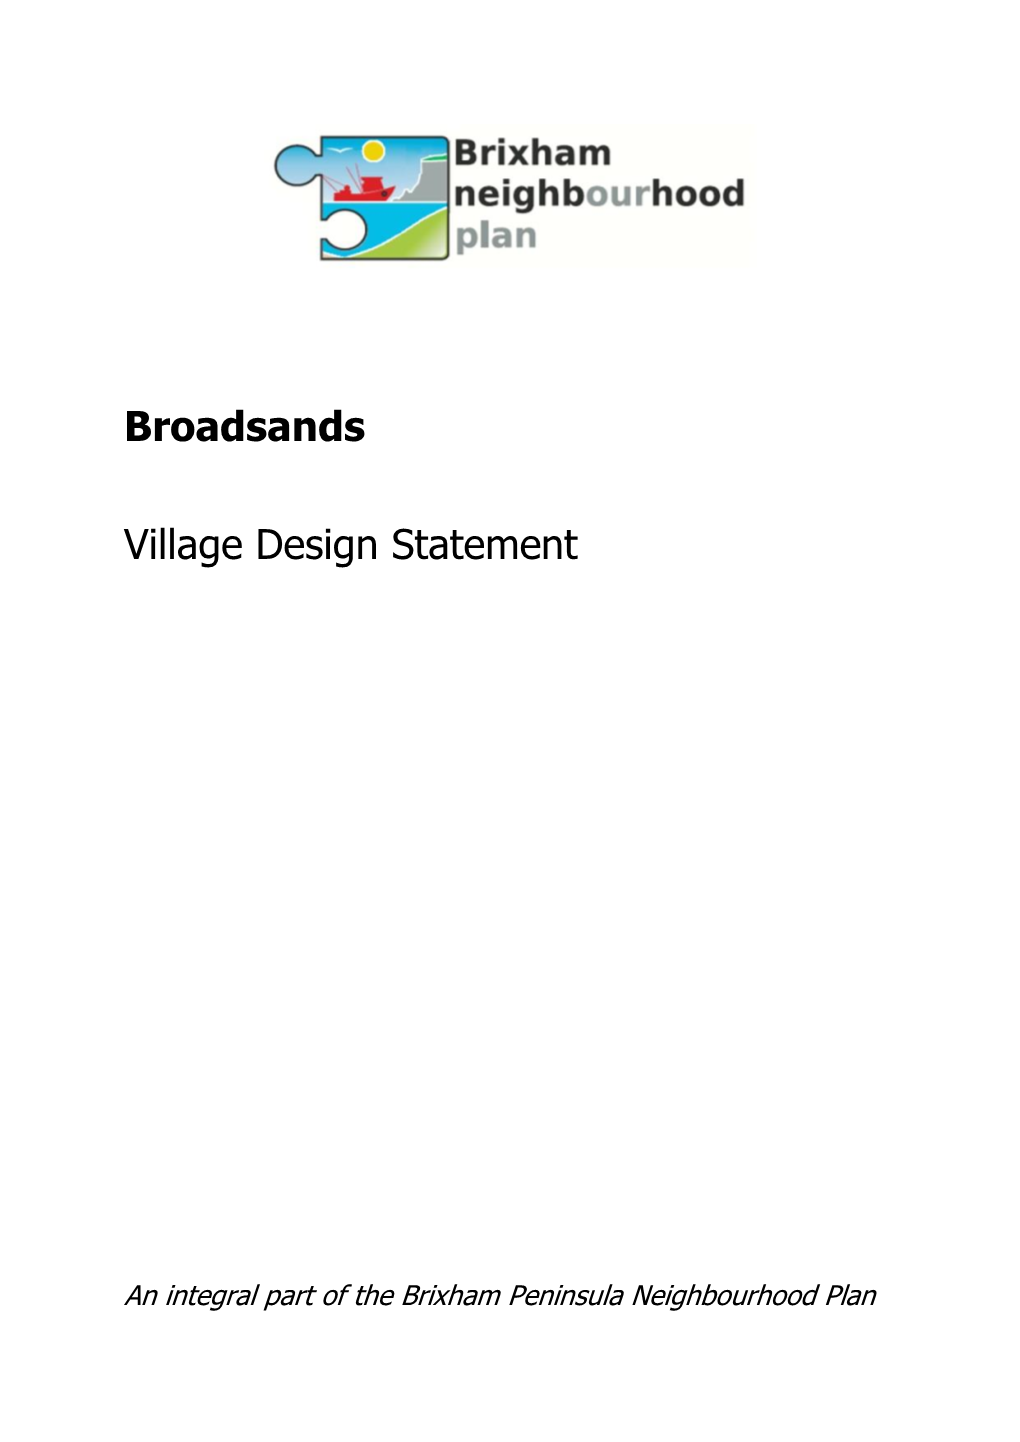 Broadsands Village Design Statement Area